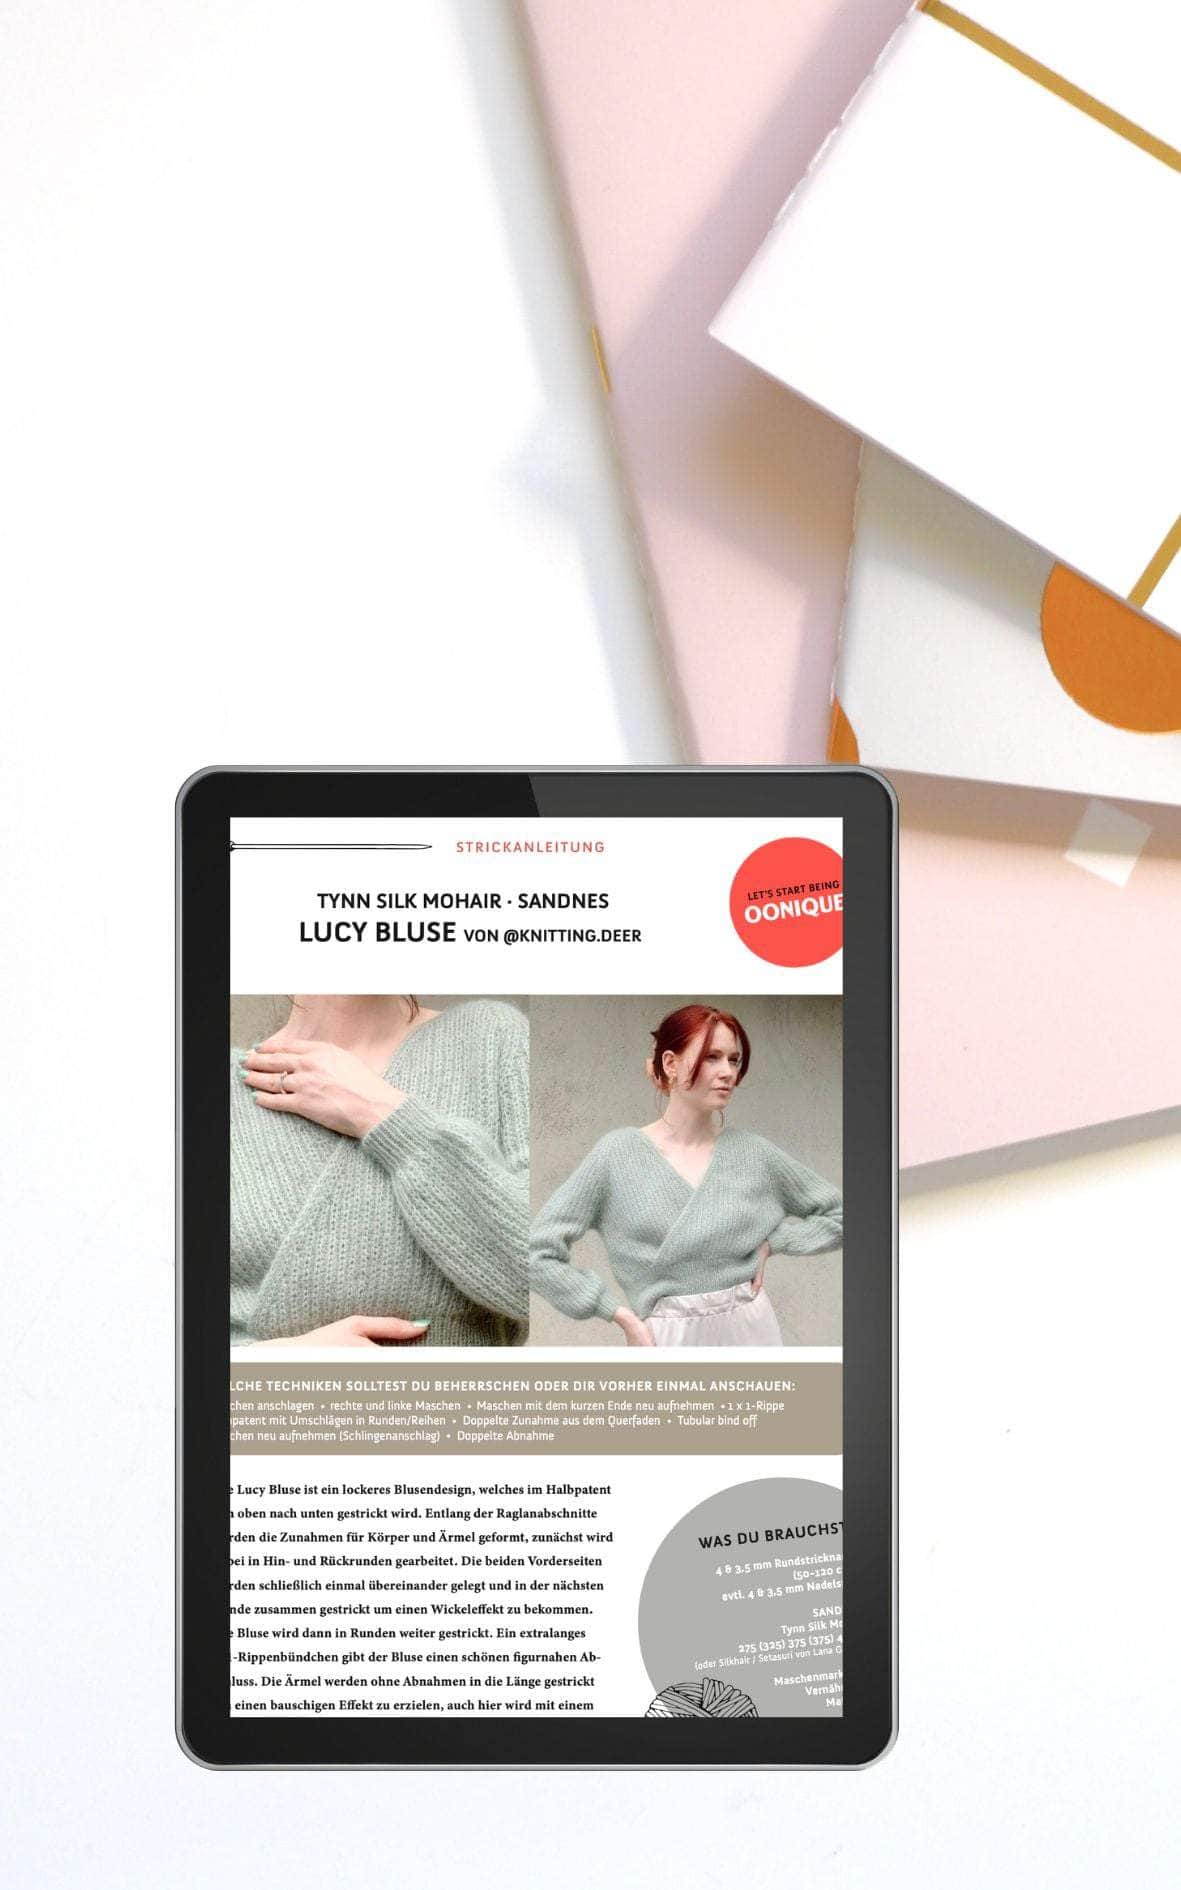 Lucy Bluse - ANLEITUNG von KNITTING DEER jetzt online kaufen bei OONIQUE